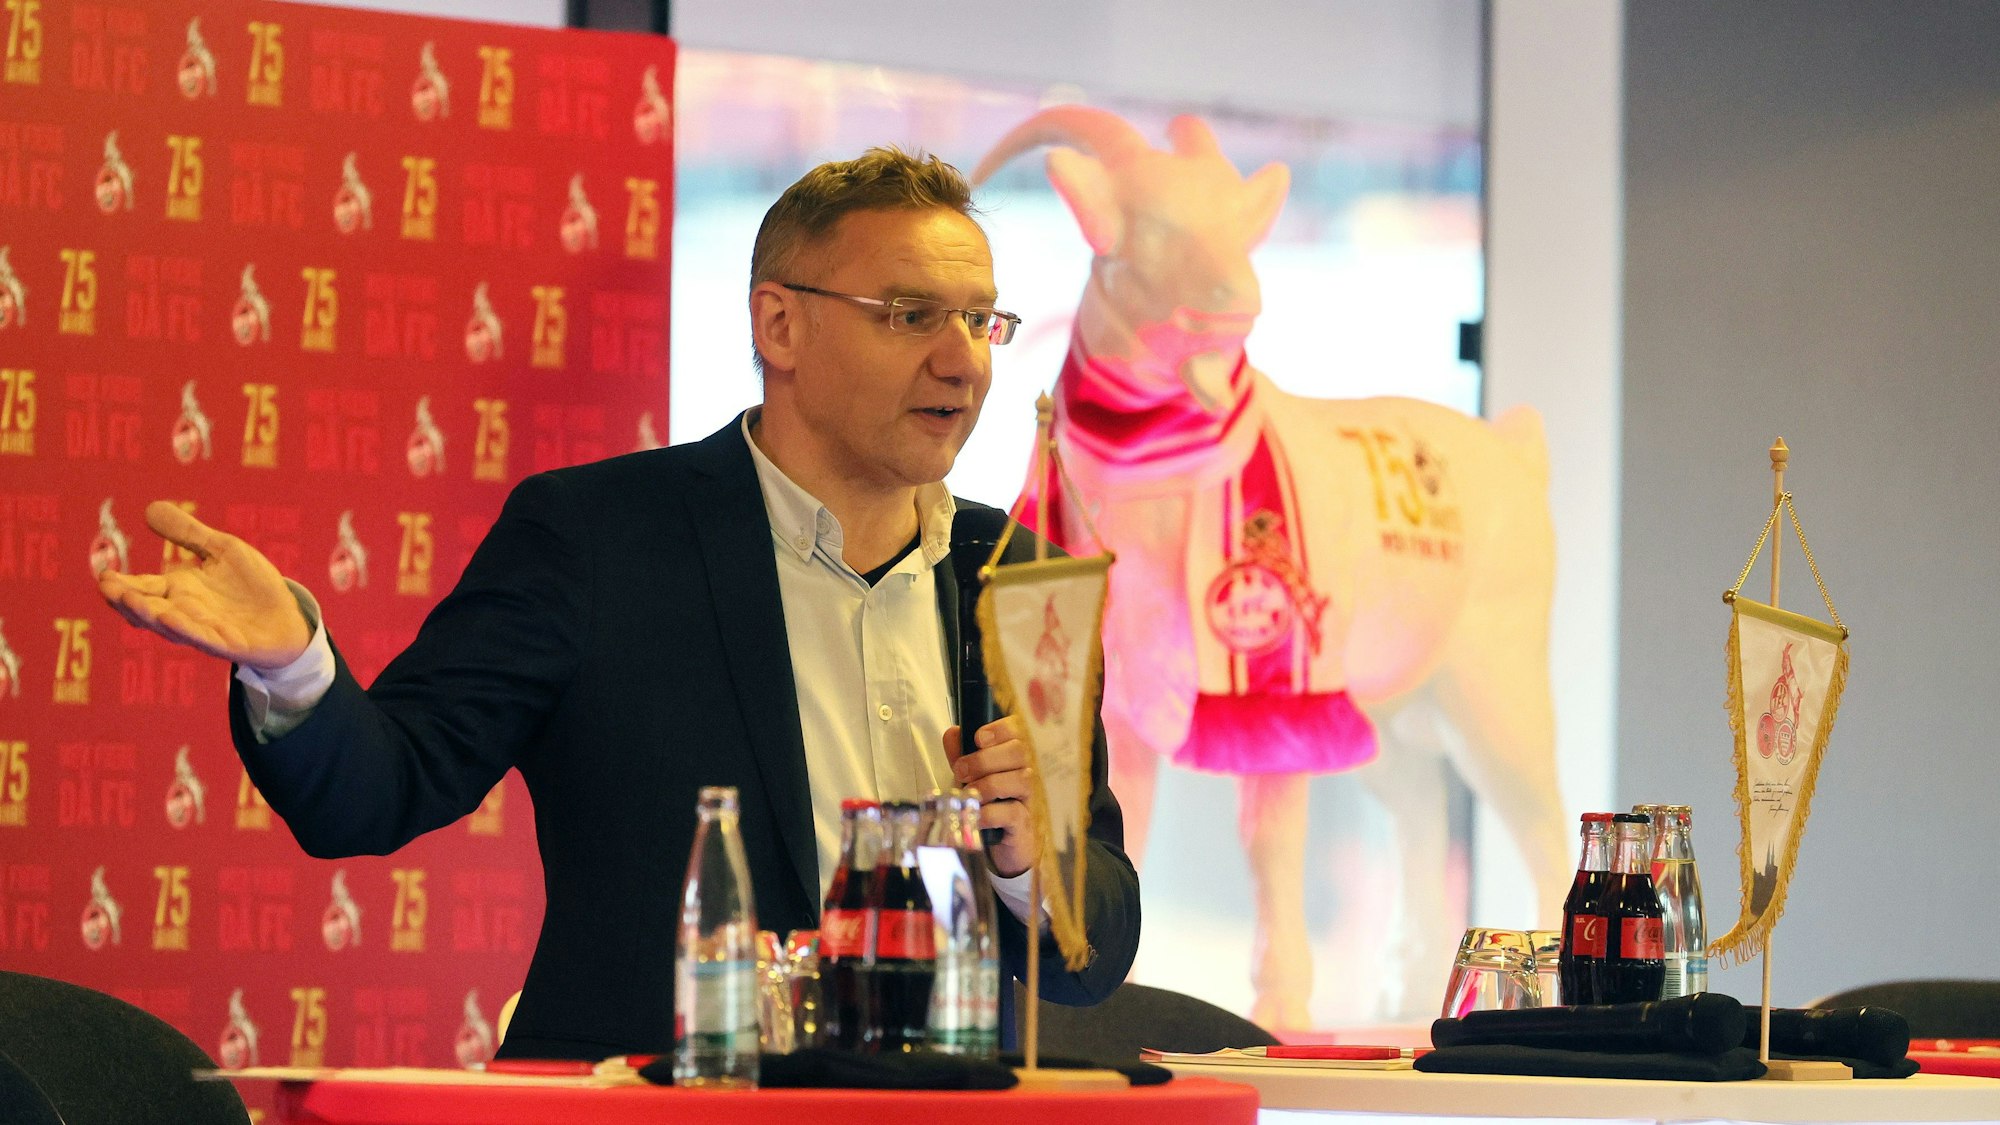 Eckhard Sauren, FC-Vizepräsident seit 2019 und Unternehmer, hält eine Ansprache.